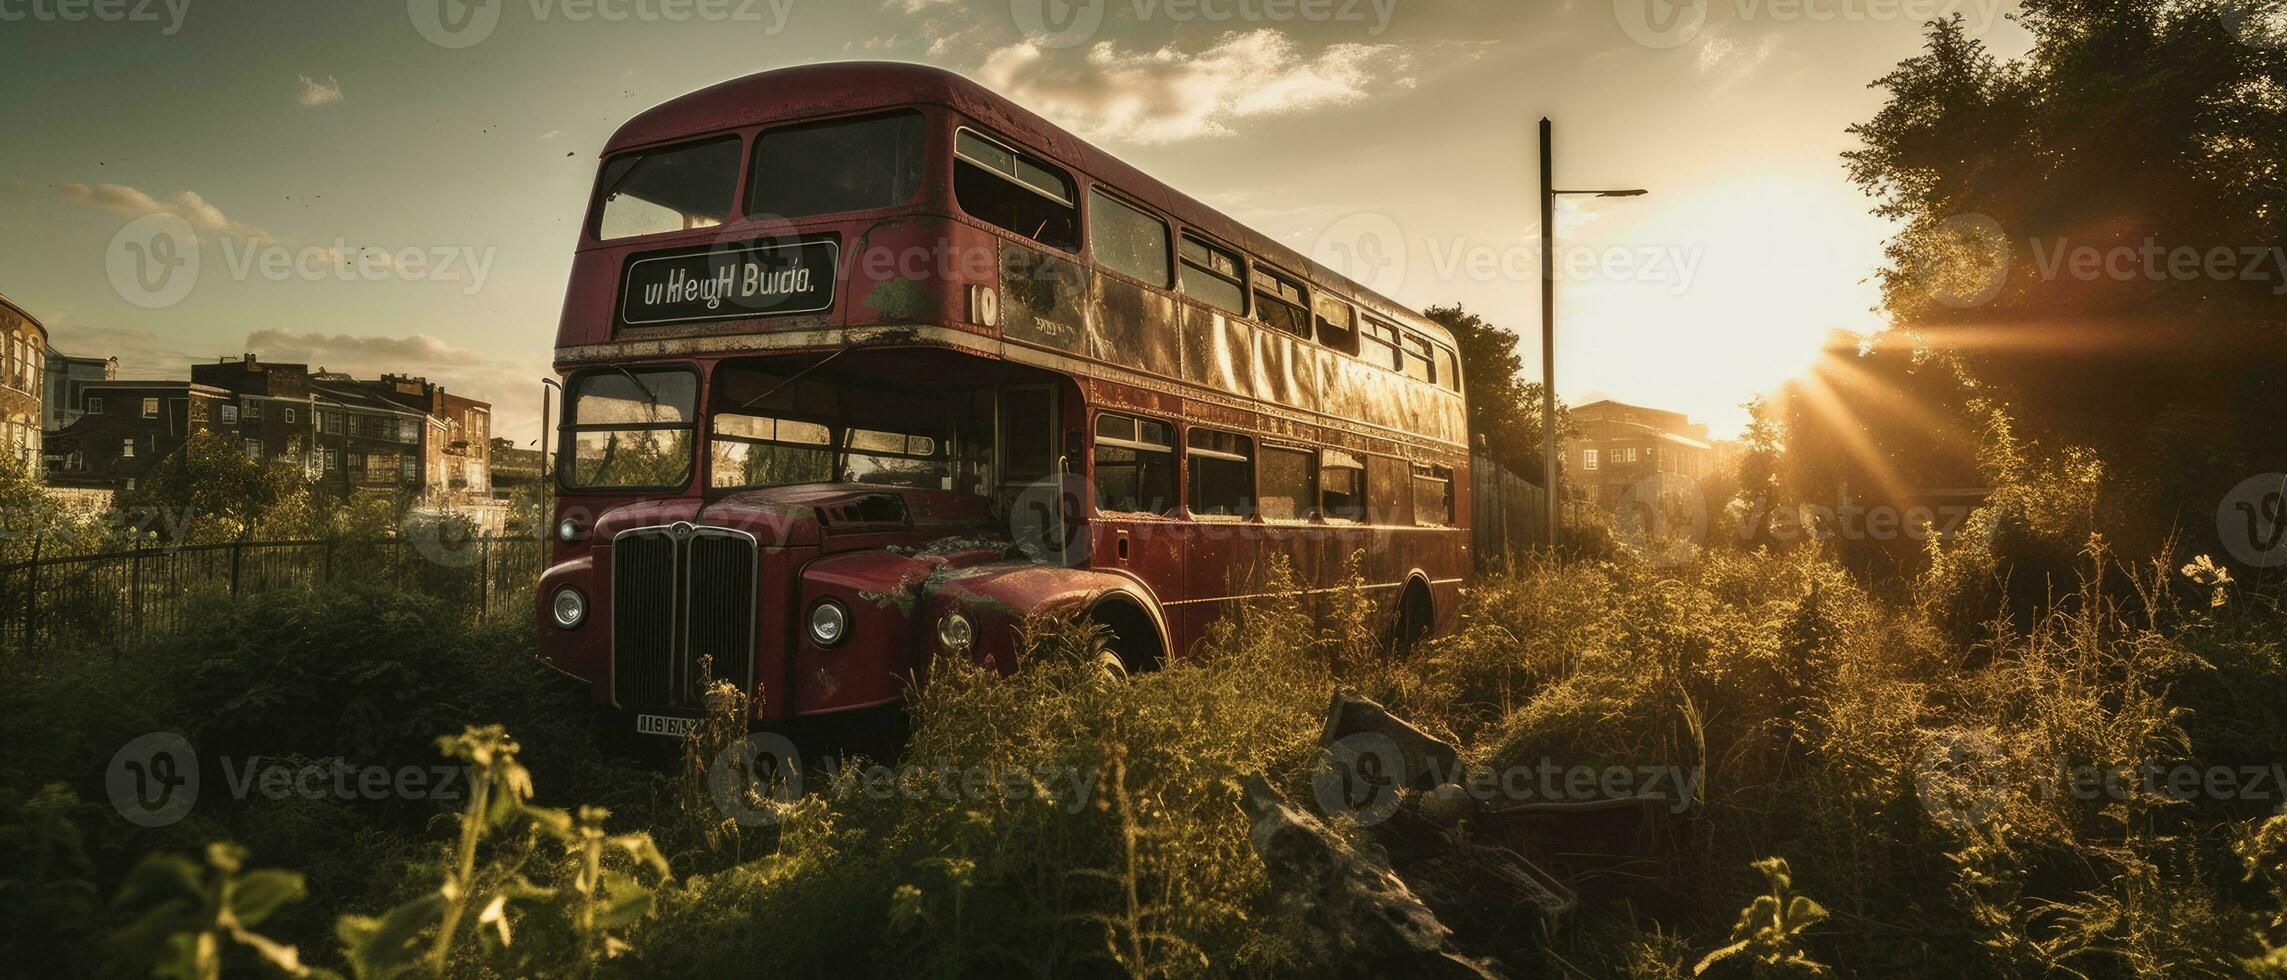 vermelho ônibus Duplo decker Londres postar apocalipse panorama jogos papel de parede foto arte ilustração ferrugem